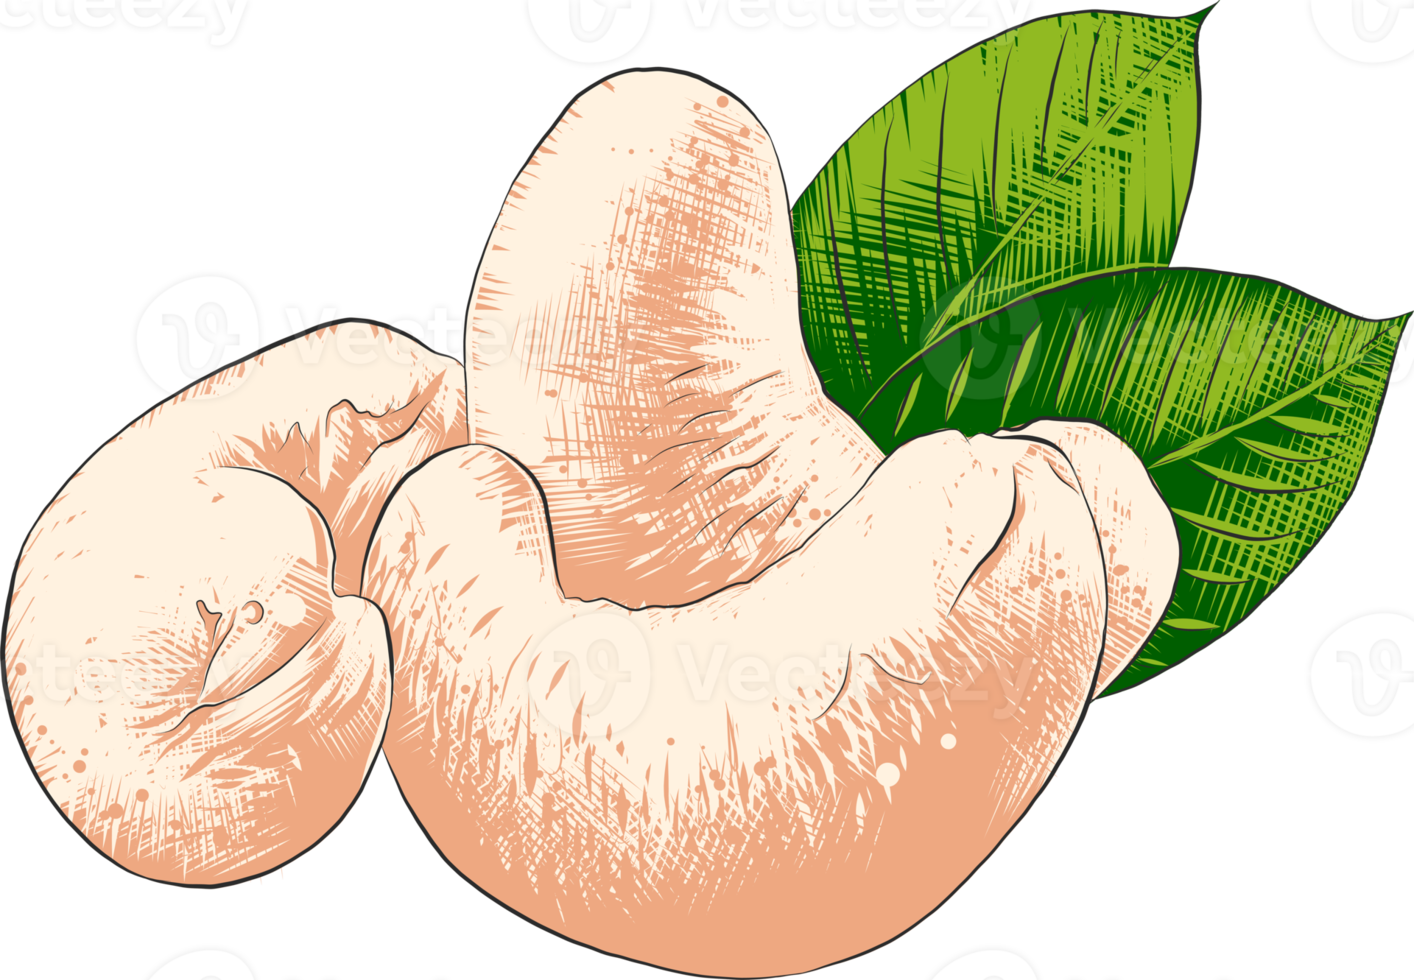 png organisch graviert Stil Illustration zum Poster, Dekoration, Etikett, Verpackung und drucken. Hand gezeichnet skizzieren von Cashew Nüsse im bunt. detailliert Vegetarier Essen Zeichnung.